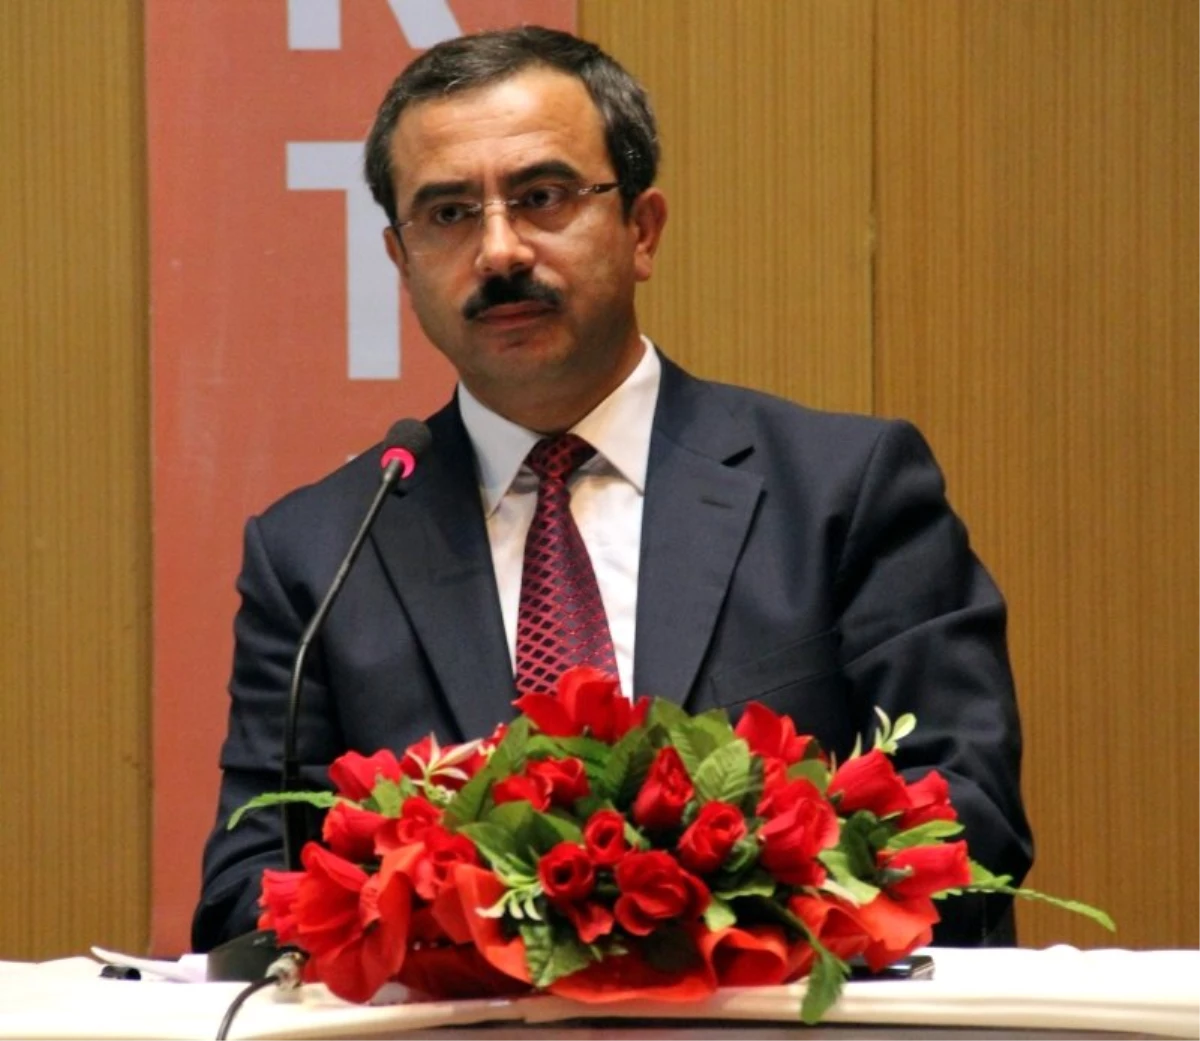 BBP Genel Başkan Yardımcısı Karacan Açıklaması